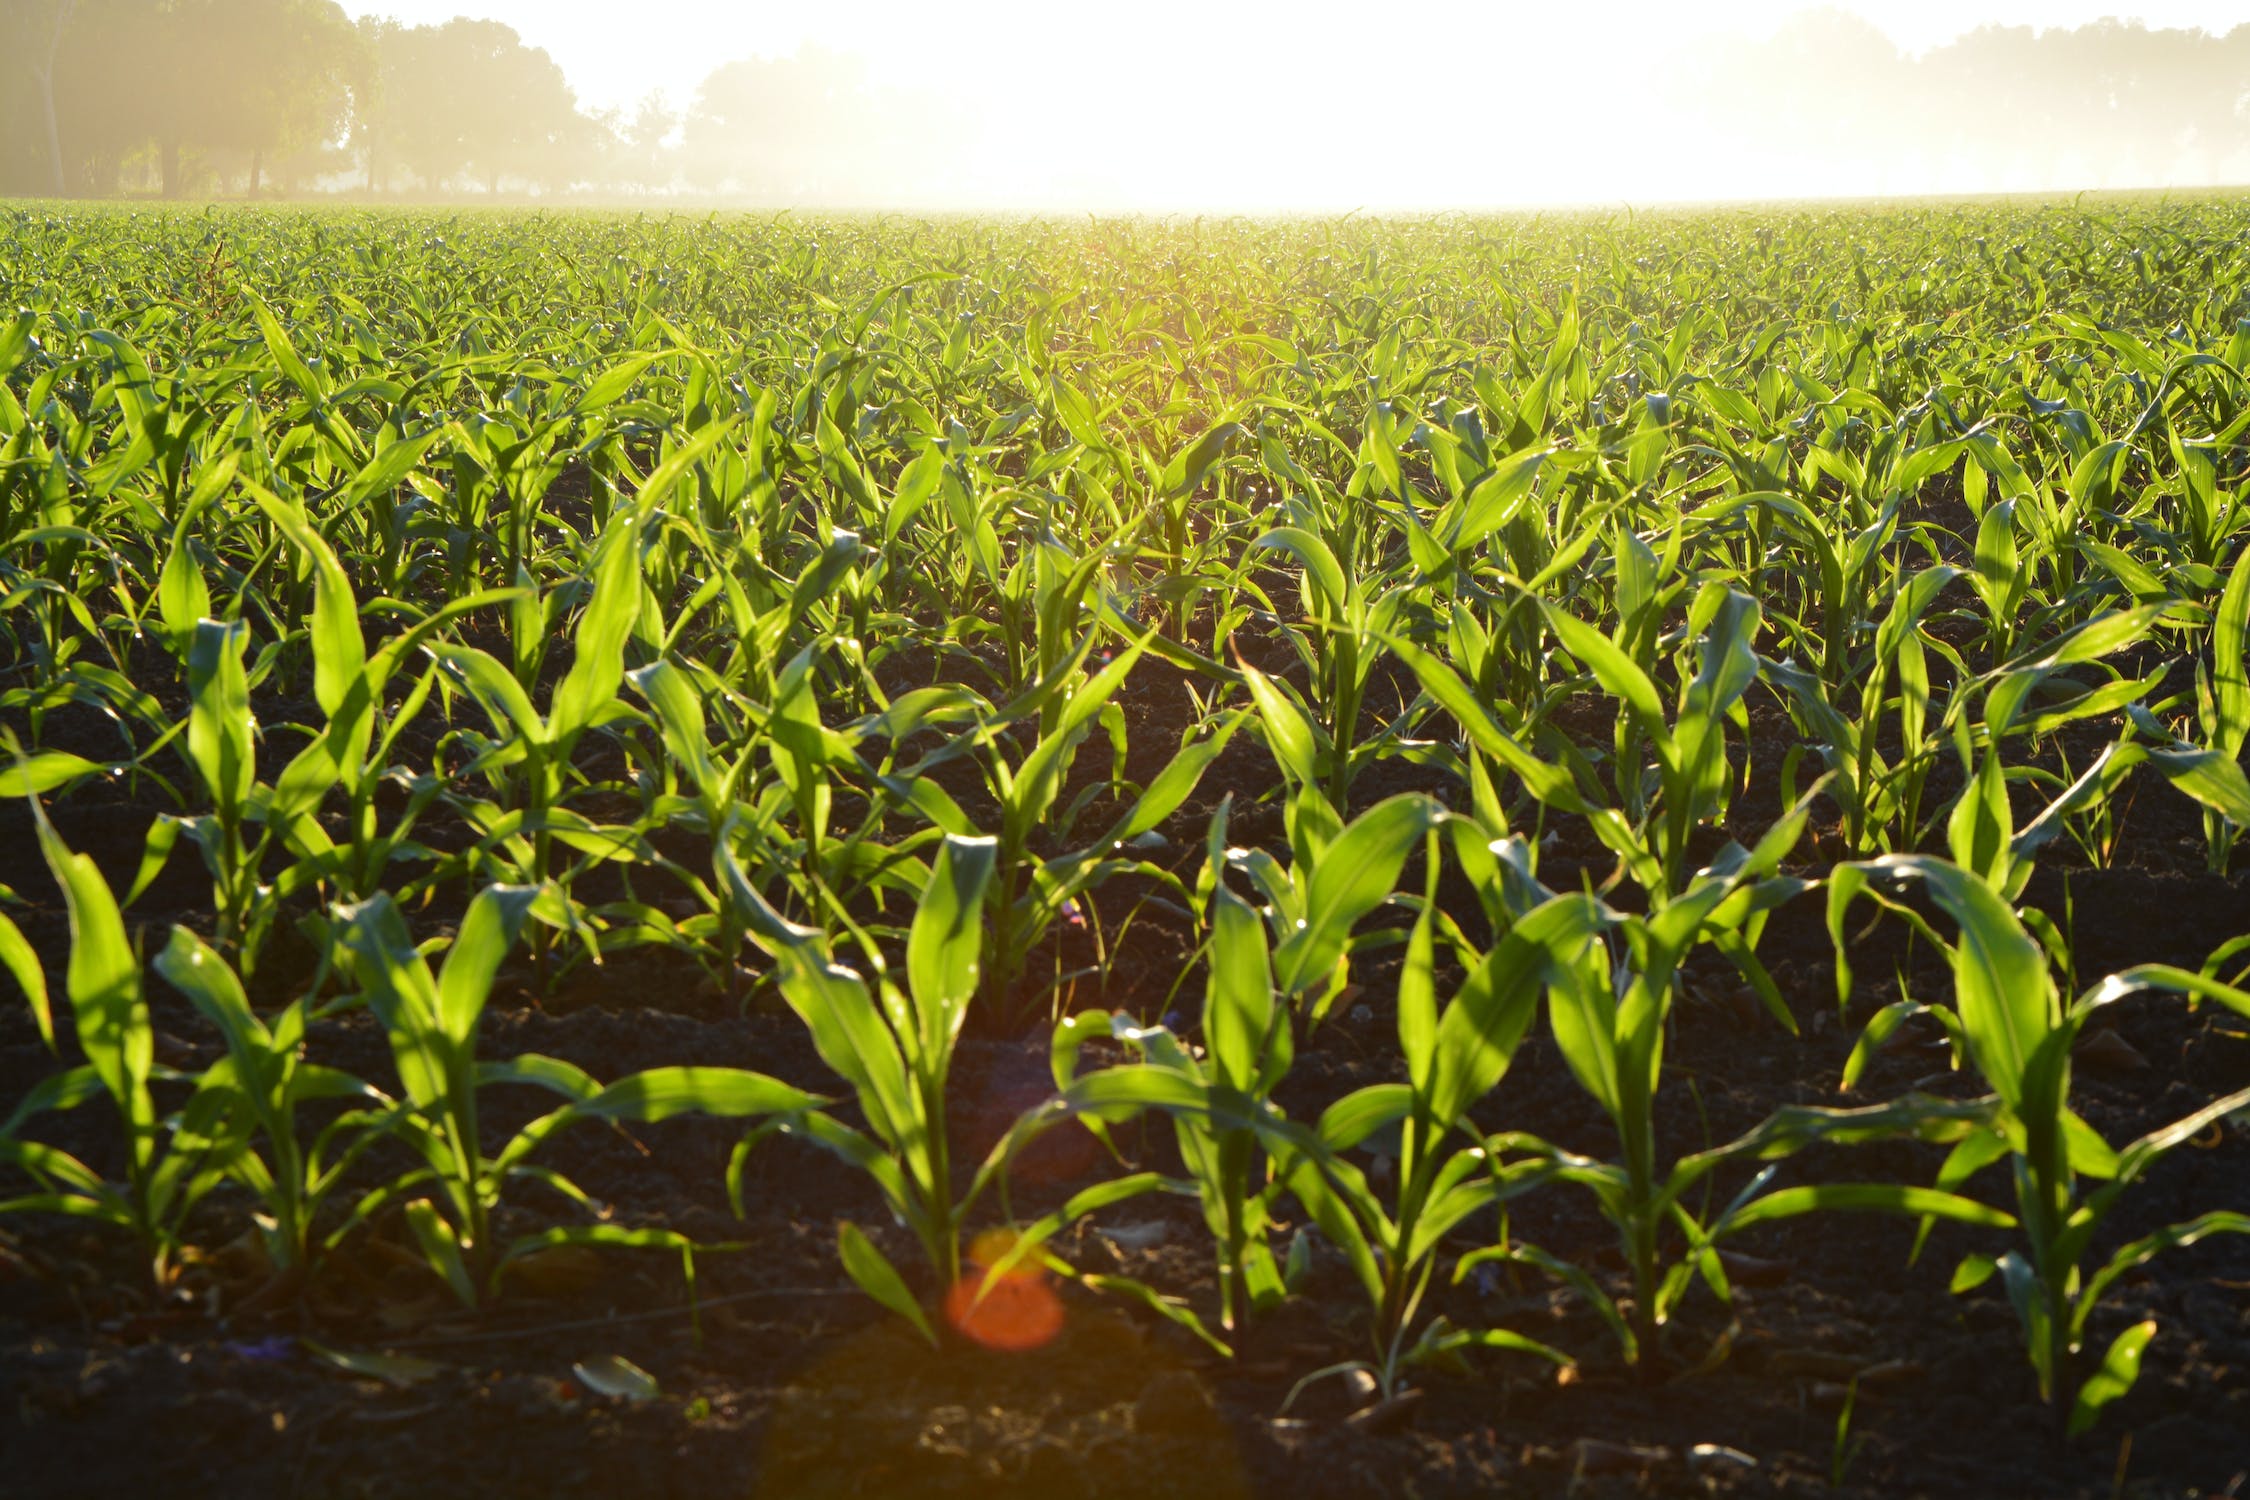 Growing corn field